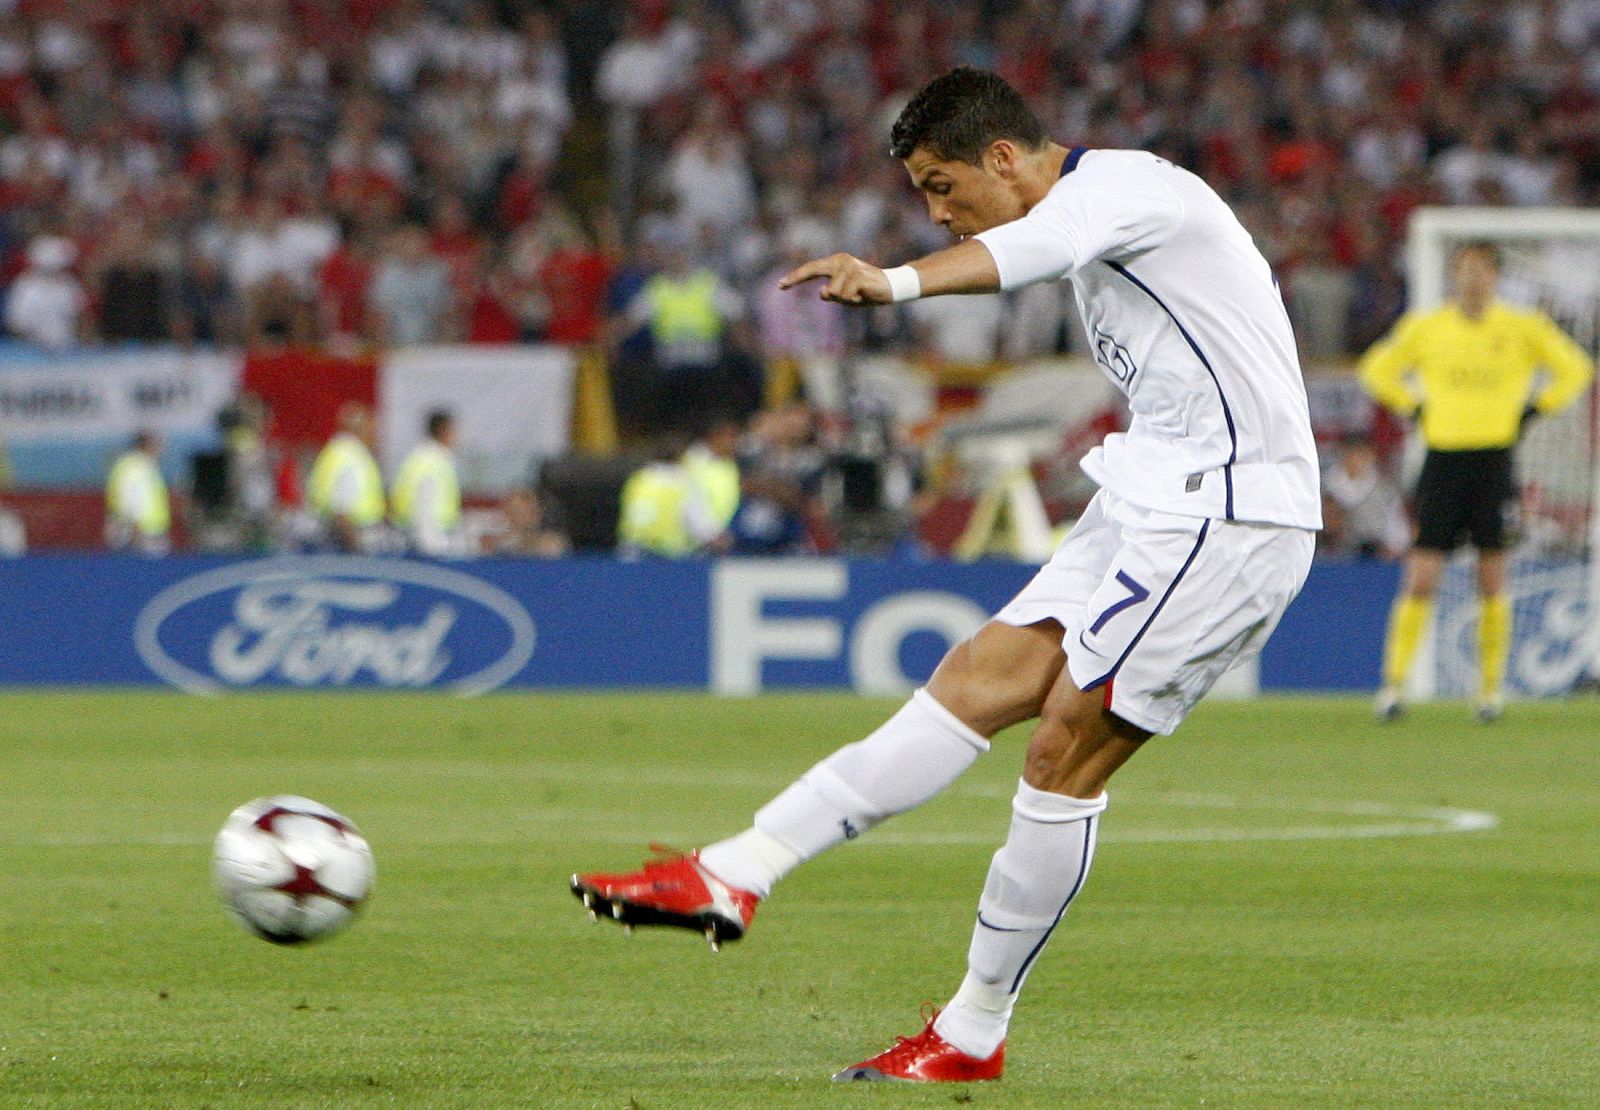 El delantero portugués, Cristiano Ronaldo, tiró seis veces a portería sin lograr meter la bola entre los tres palos.